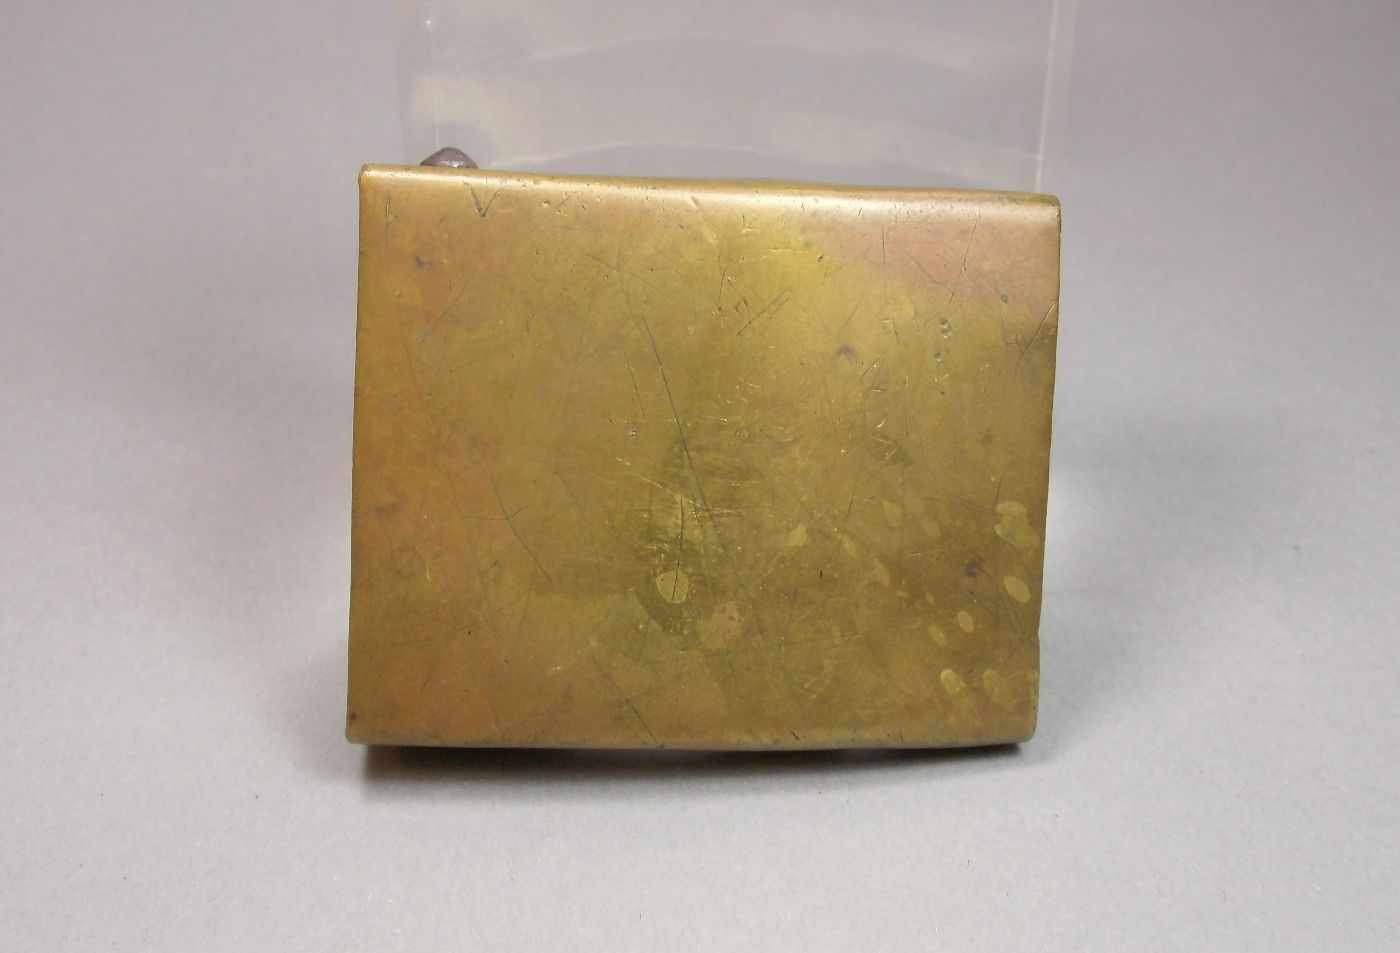 ORIGINALES KOPPELSCHLOSS ohne Hoheitszeichen oder Devise, goldfarbenes Metall, gebogte Form. 5,3 x